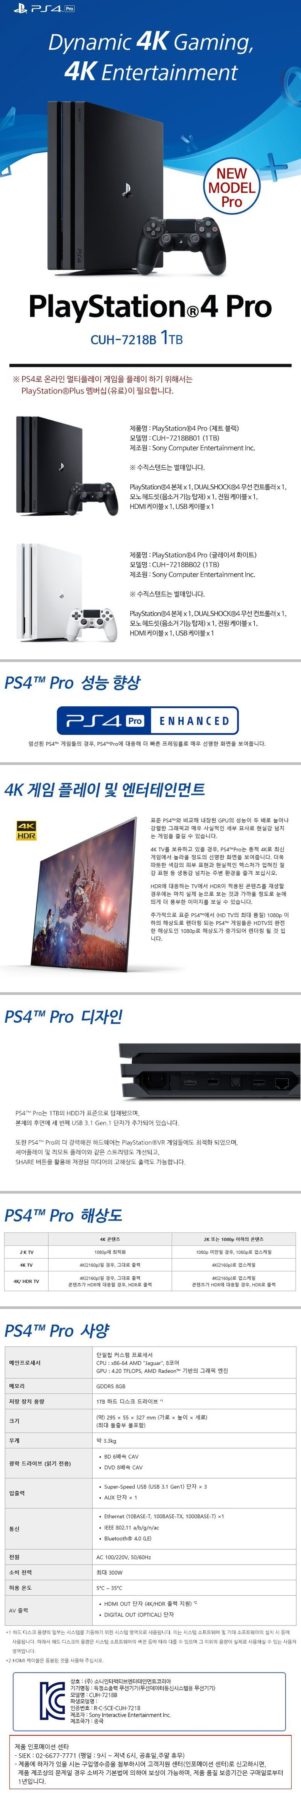 sony PlayStation 4 Pro